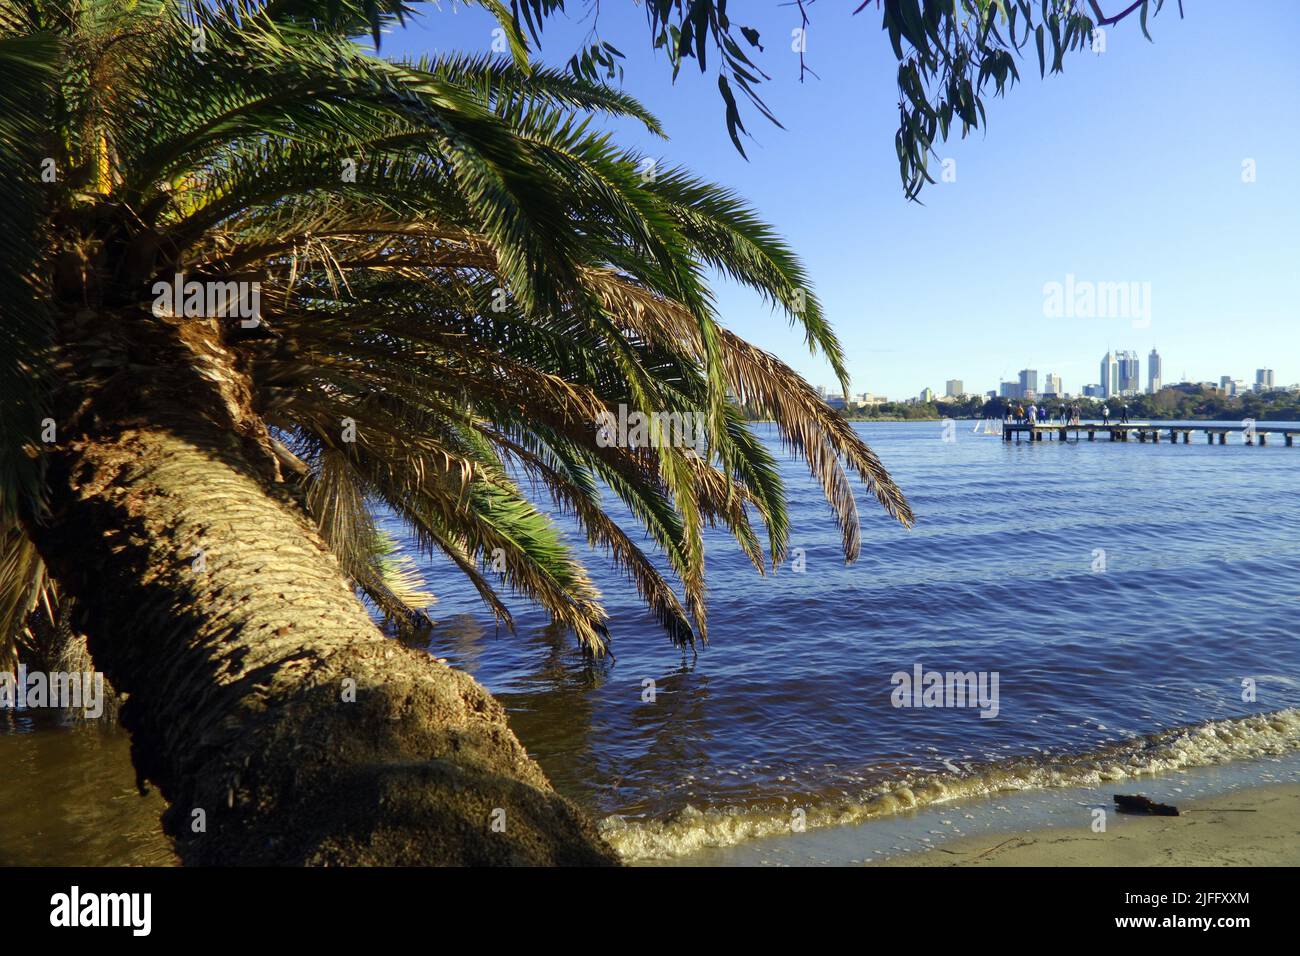 Palmera dátil colgando sobre el río Swan, Maylands, con el distrito central de negocios de Perth en el horizonte, Perth, Australia Occidental Foto de stock